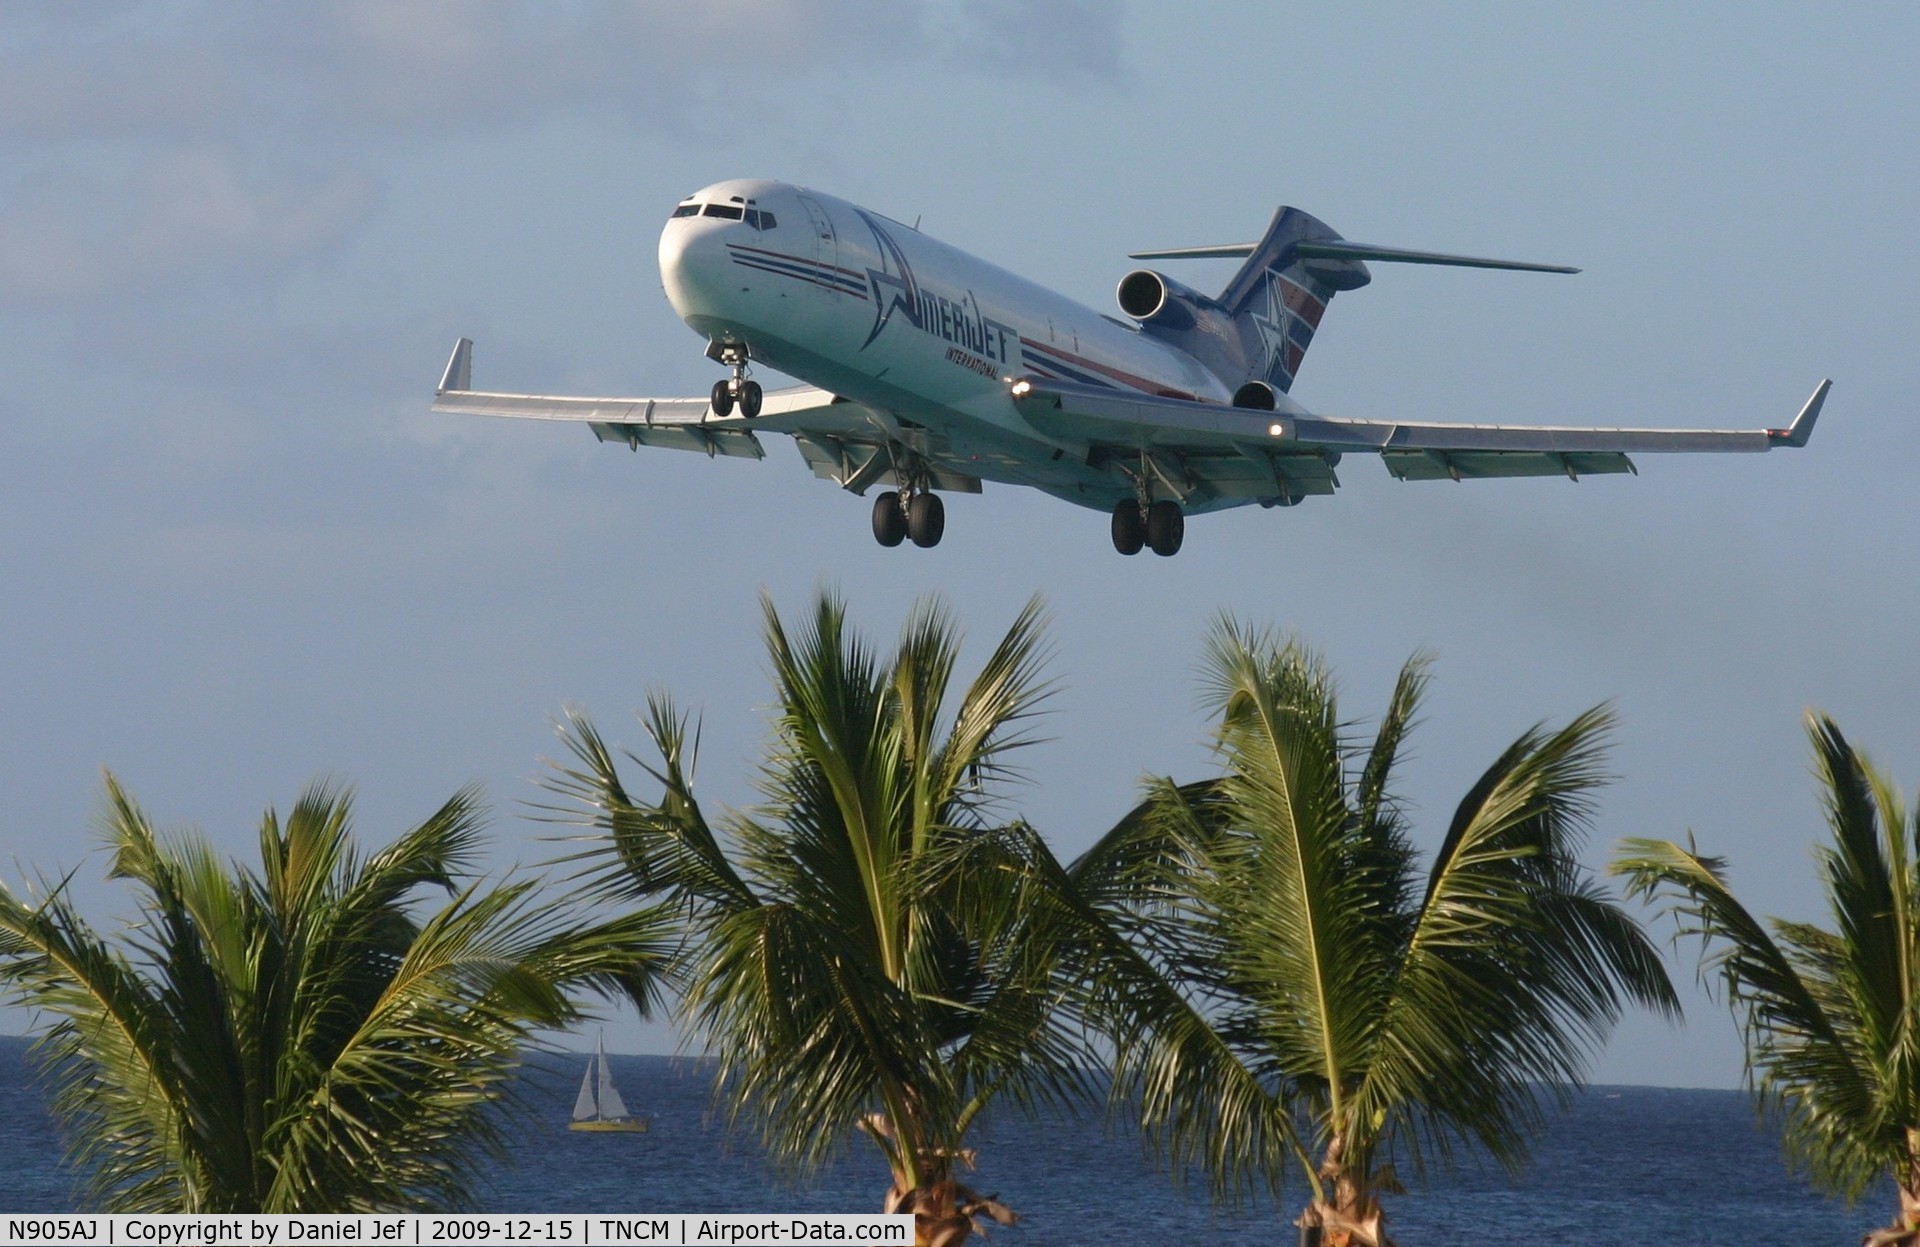 N905AJ, 1980 Boeing 727-231 C/N 21989, Amerijet 727 just clearing the palm trees befor landing at St Maarten